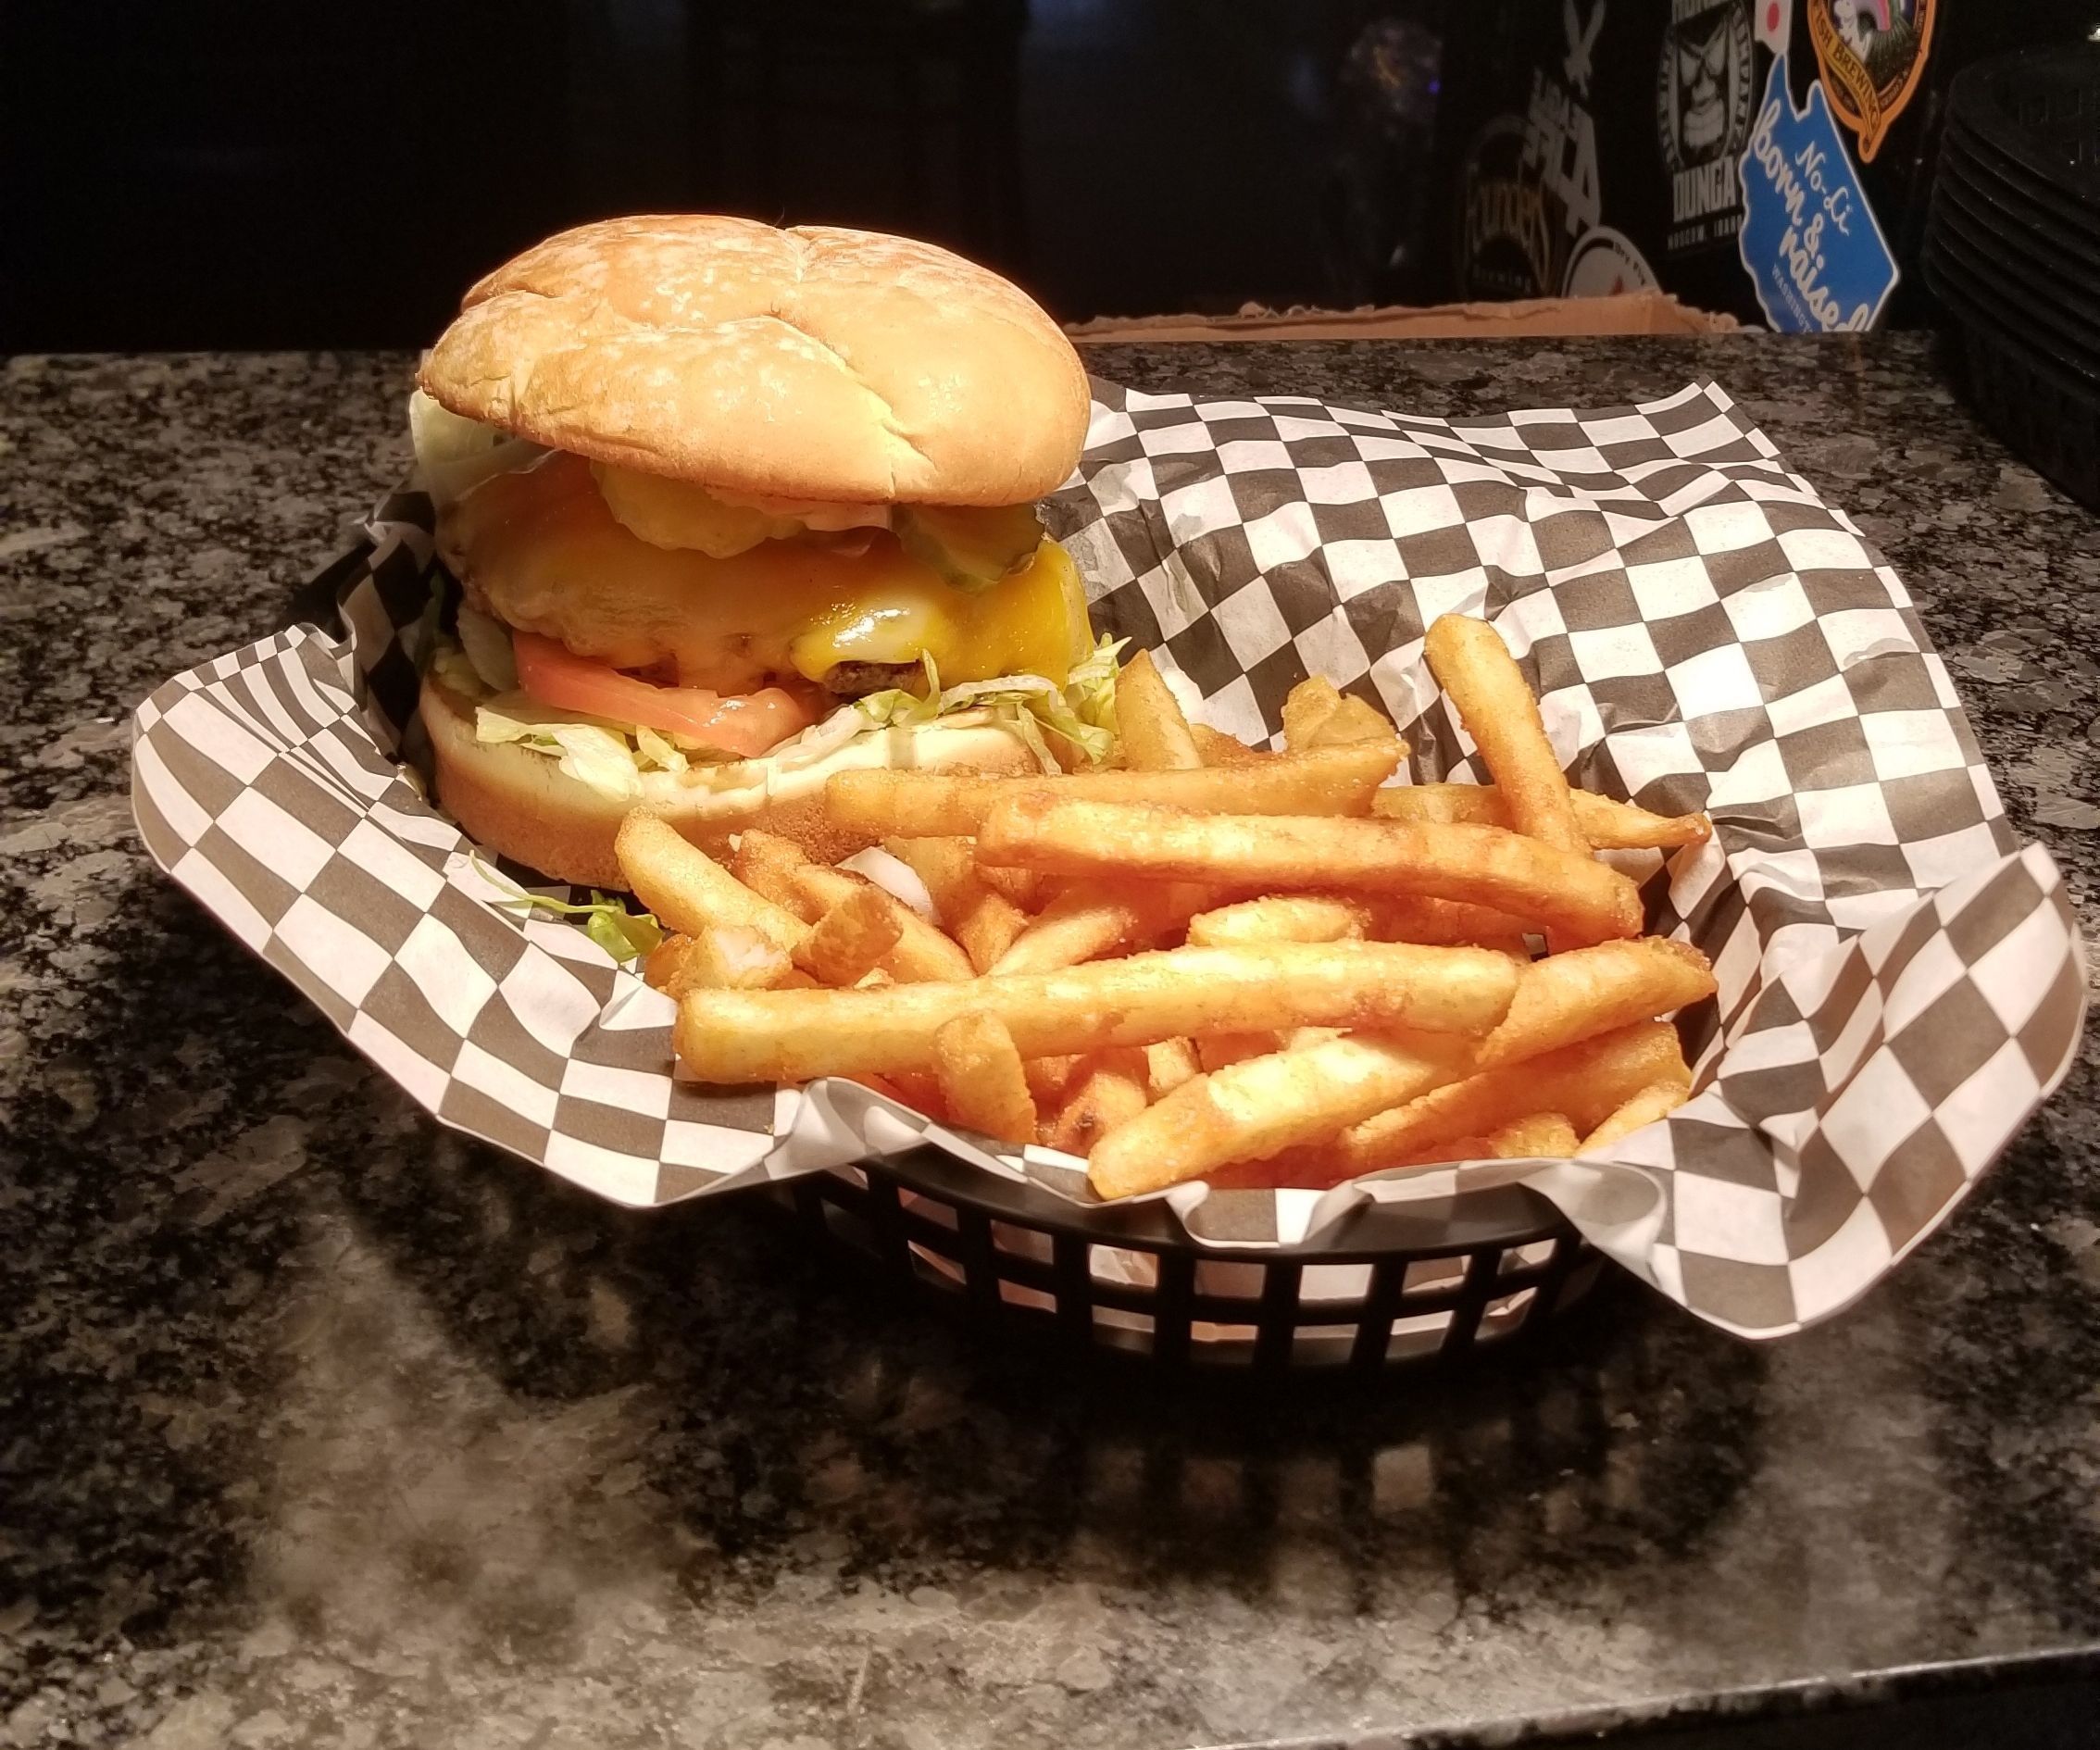 Restaurant Grade Cheeseburger: Overview